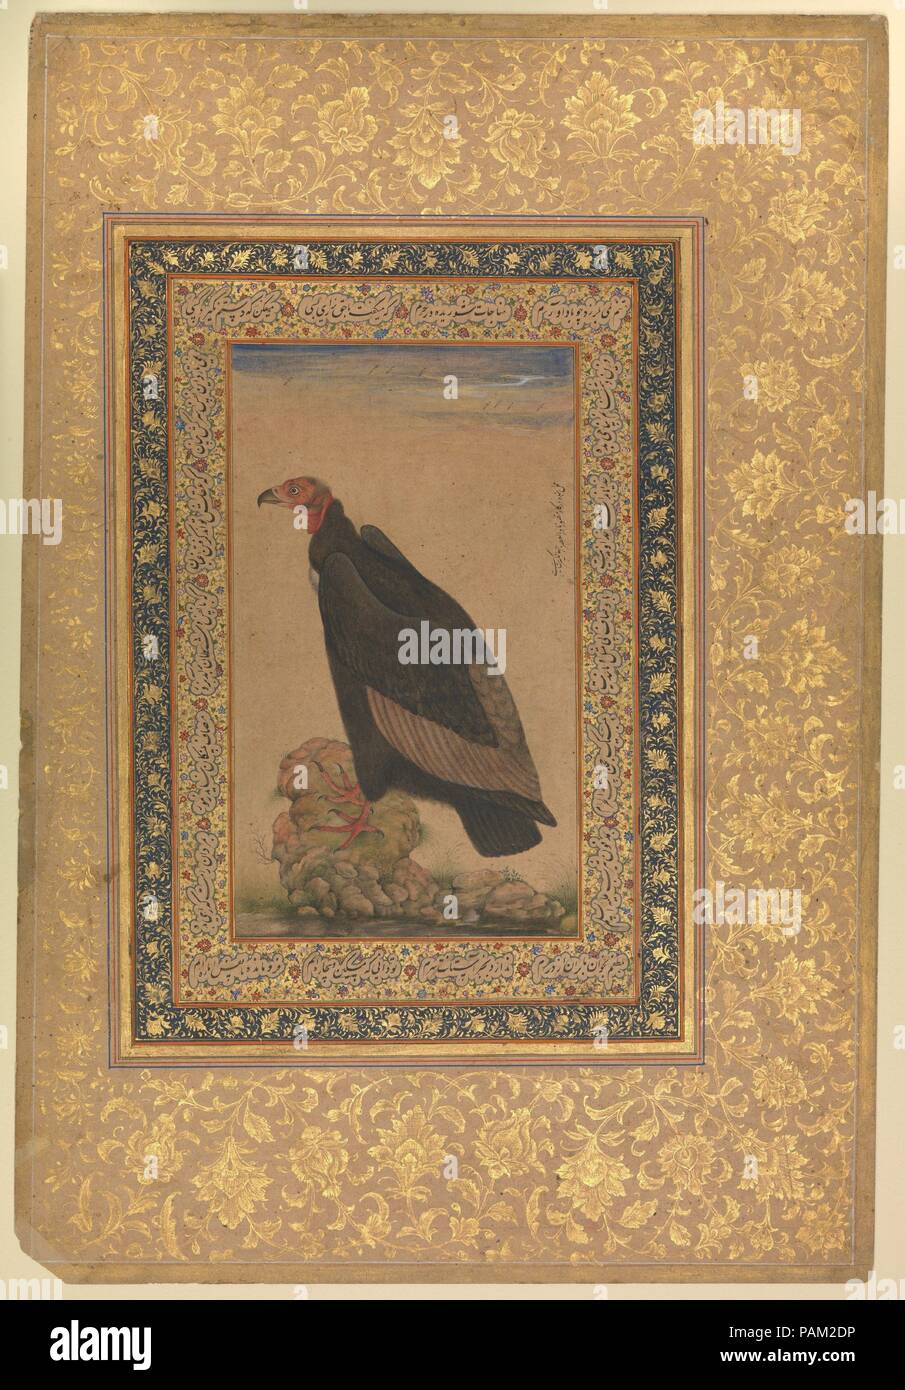 Red-Headed zopilote", Folio del Shah Jahan Álbum. Dimensiones: H. 15 1/8  pulg. (38,4 cm) W. 10 1/4 pulg. (26 cm). Fecha: anverso y reverso:  principios del siglo XIX. Museo: Museo Metropolitano de